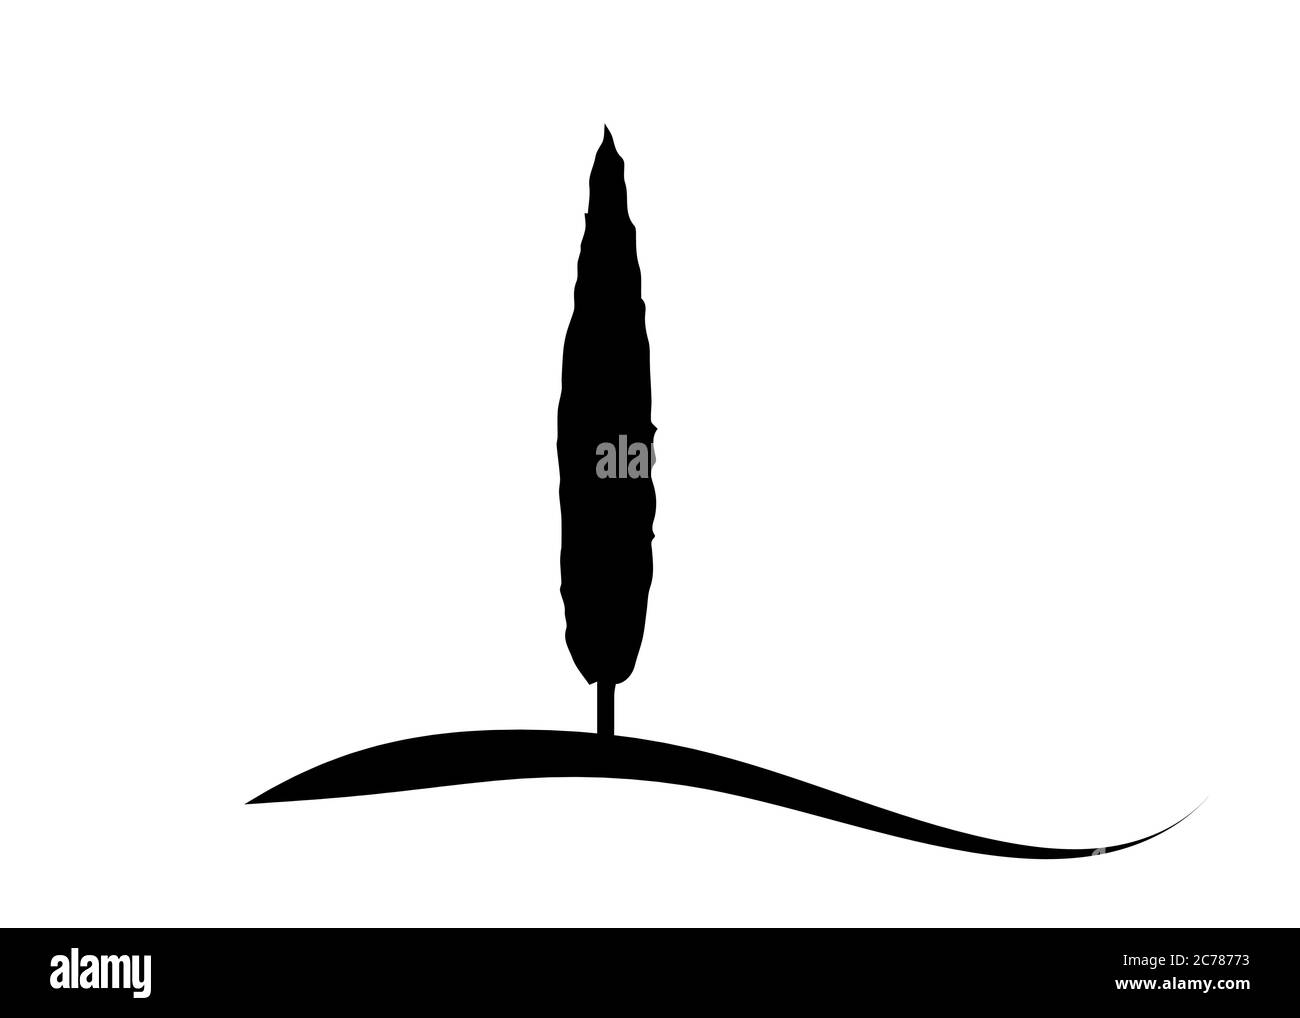 Zypressensymbol. Einfache Illustration von Zypresse Vektor-Symbol für Web. Italienische Silhouette Zypressen die typische toskanische Landschaft. Vektor isoliert Stock Vektor